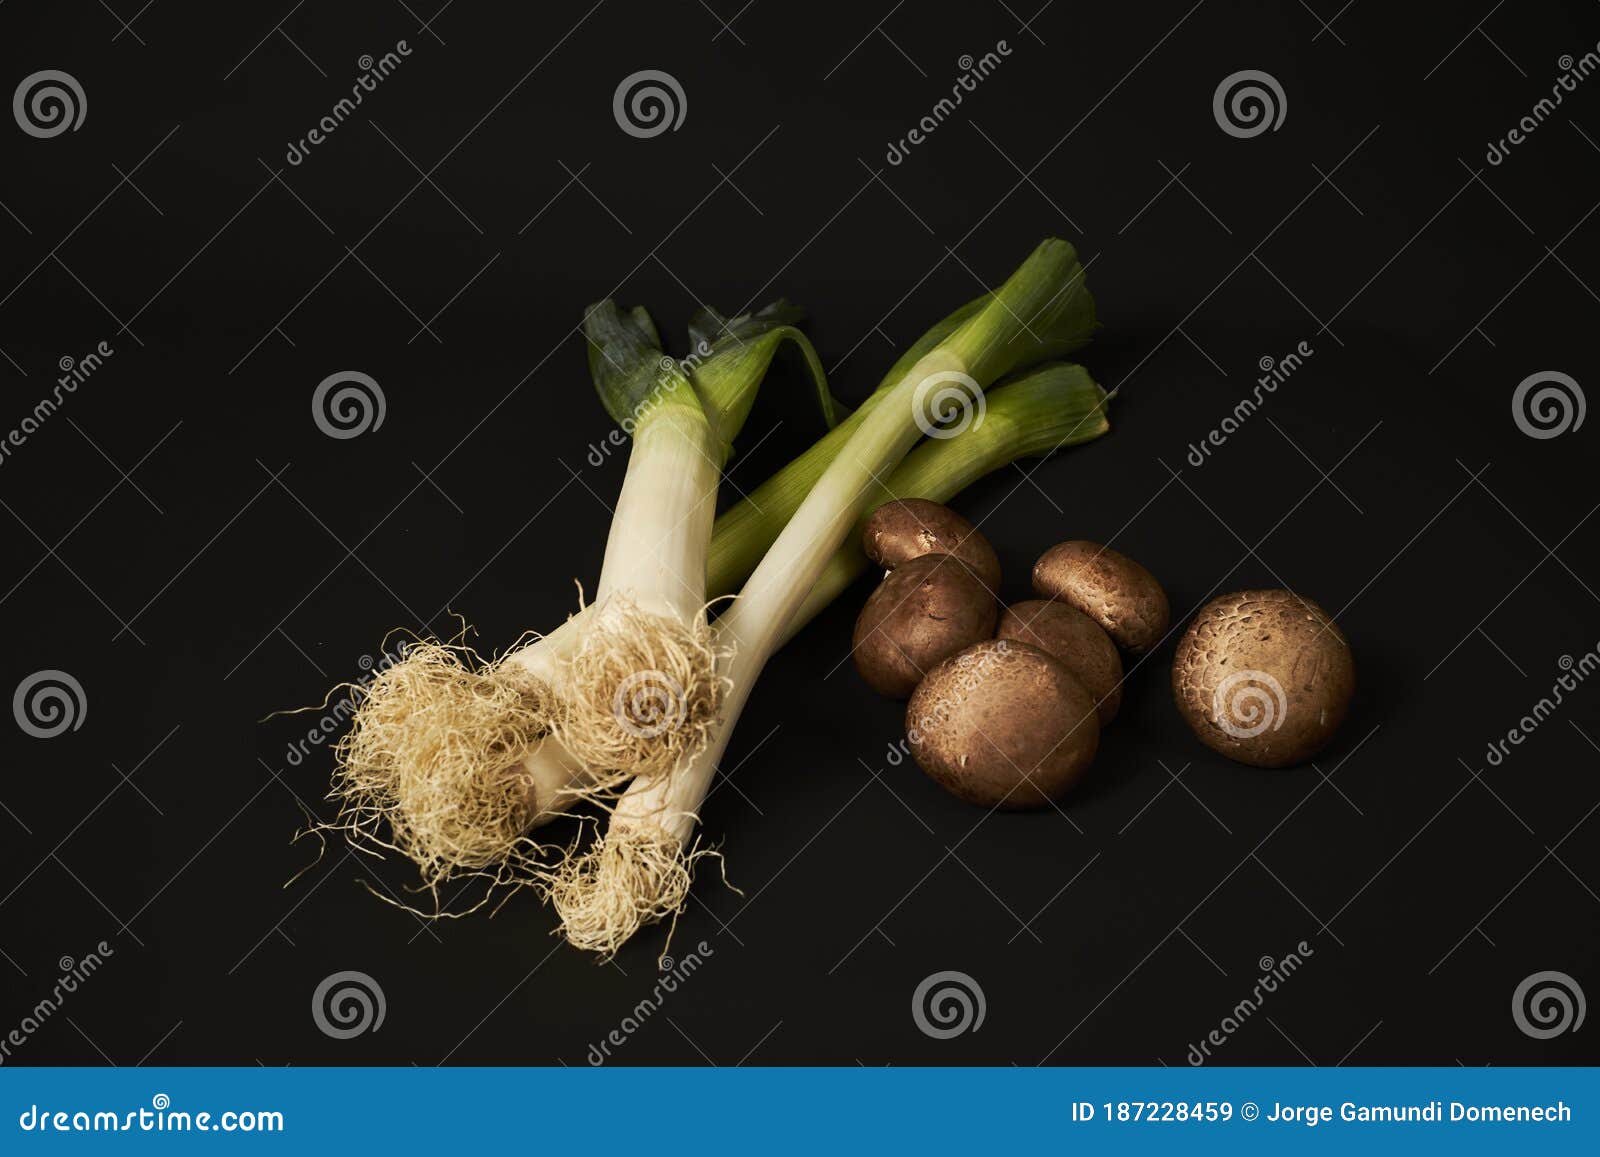 assortment of vegetables sobre fondo negro